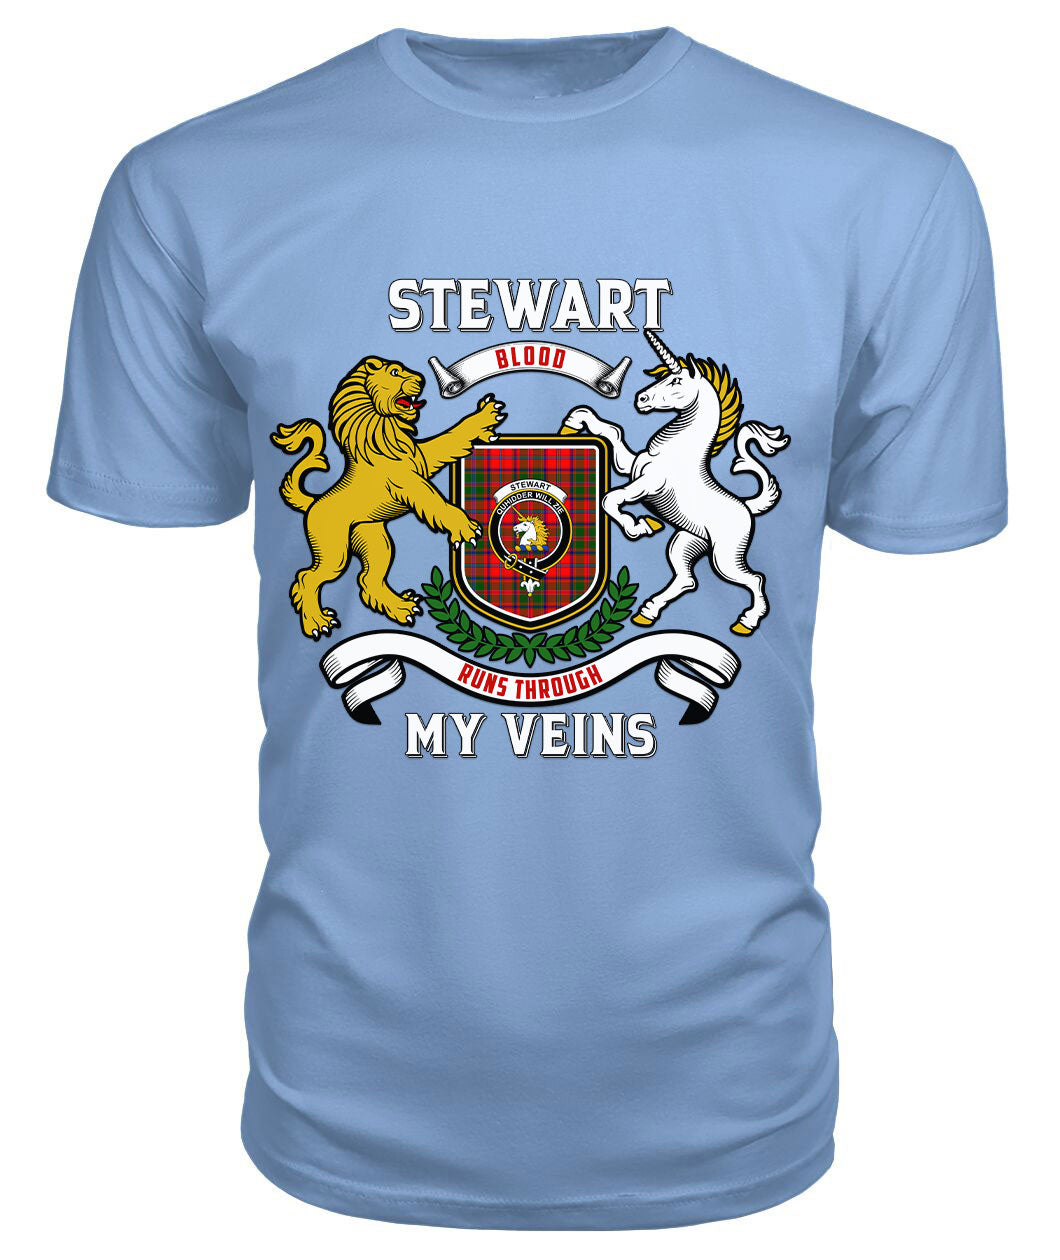 Stewart of Appin Modern Tartan Crest 2D T-shirt - Blood Runs Through My Veins Style